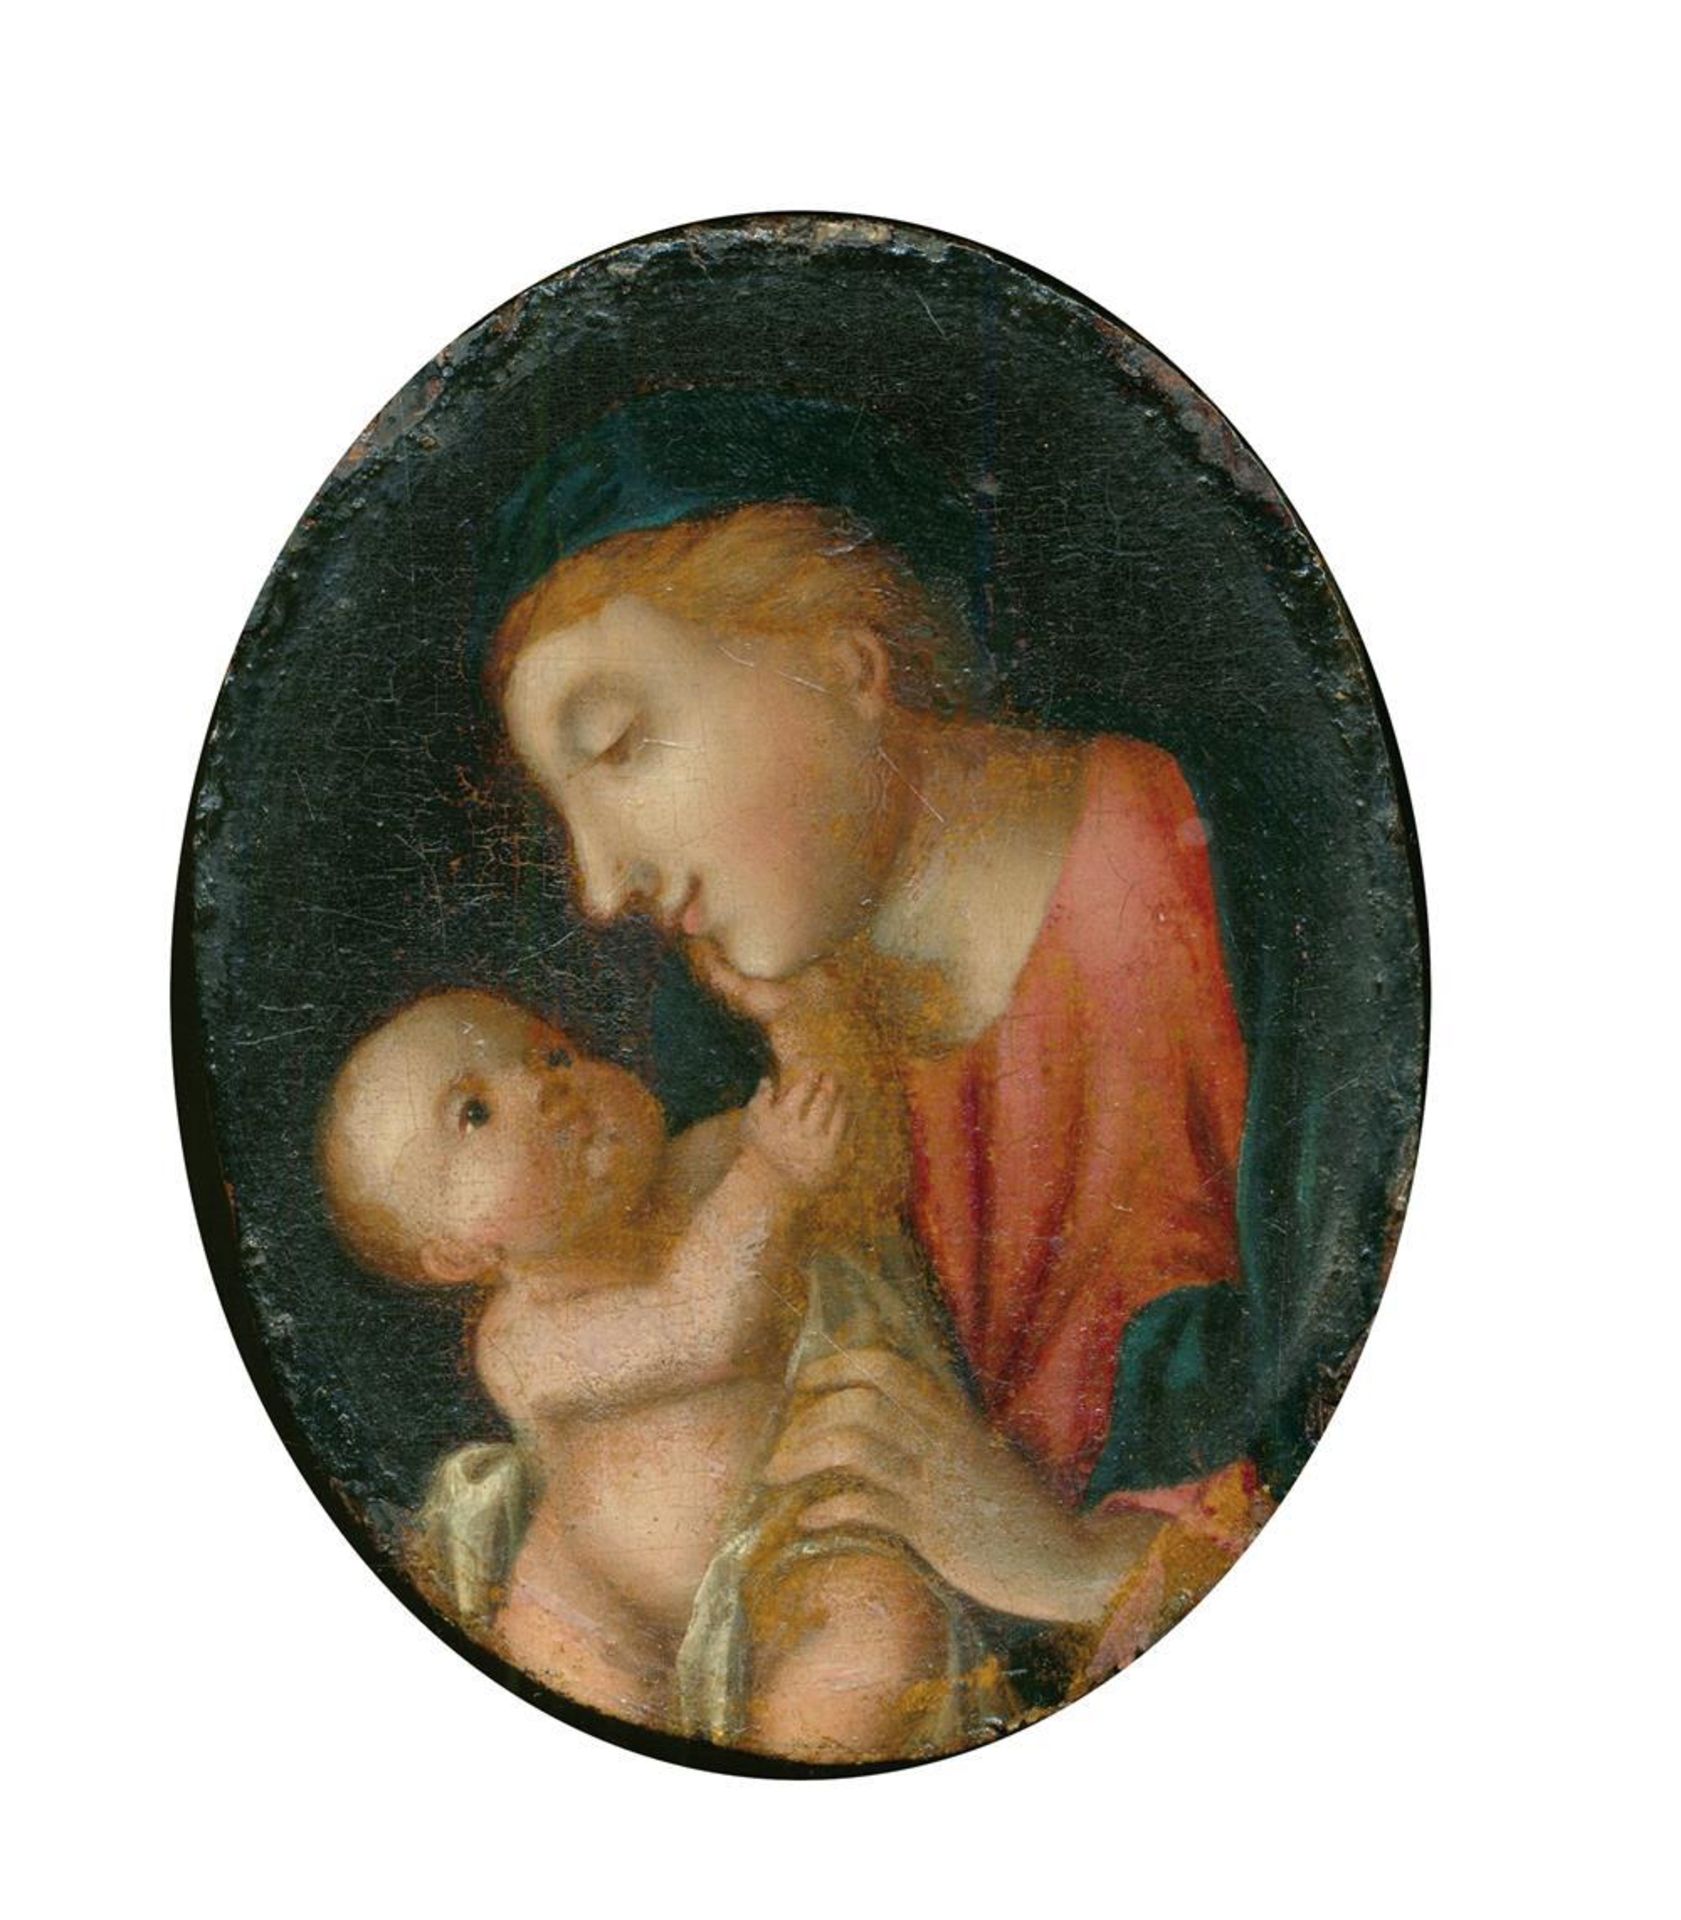 Andachtsbild.Madonna mit Kind. Anonymes Öl auf Holz im Oval, wohl deutsch, 17./18. Jh. Ca. 9,5 x 7,5